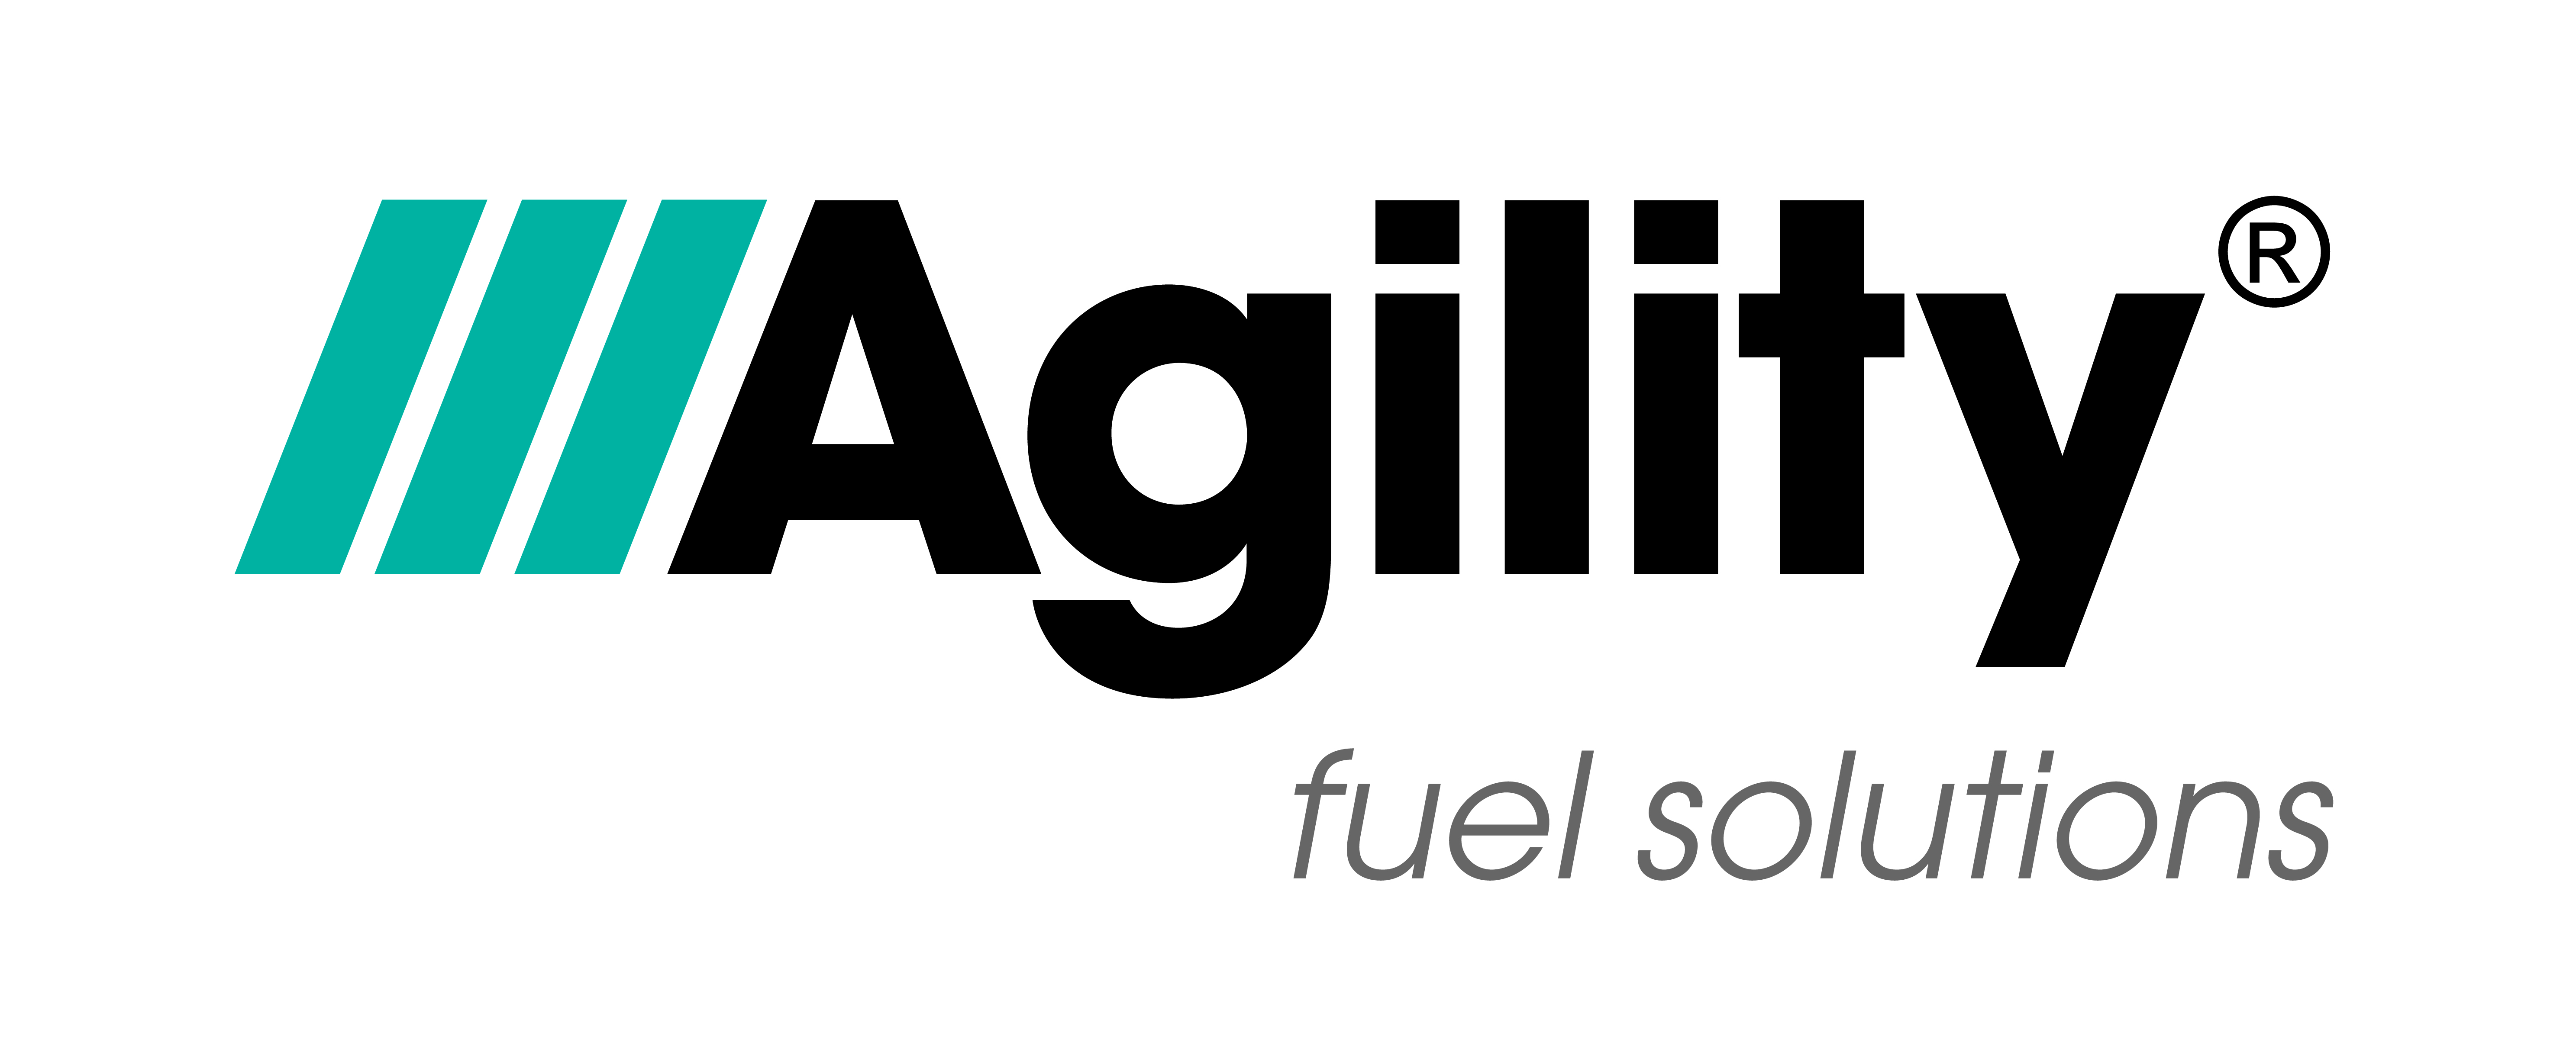 Agility Fuel Solutio